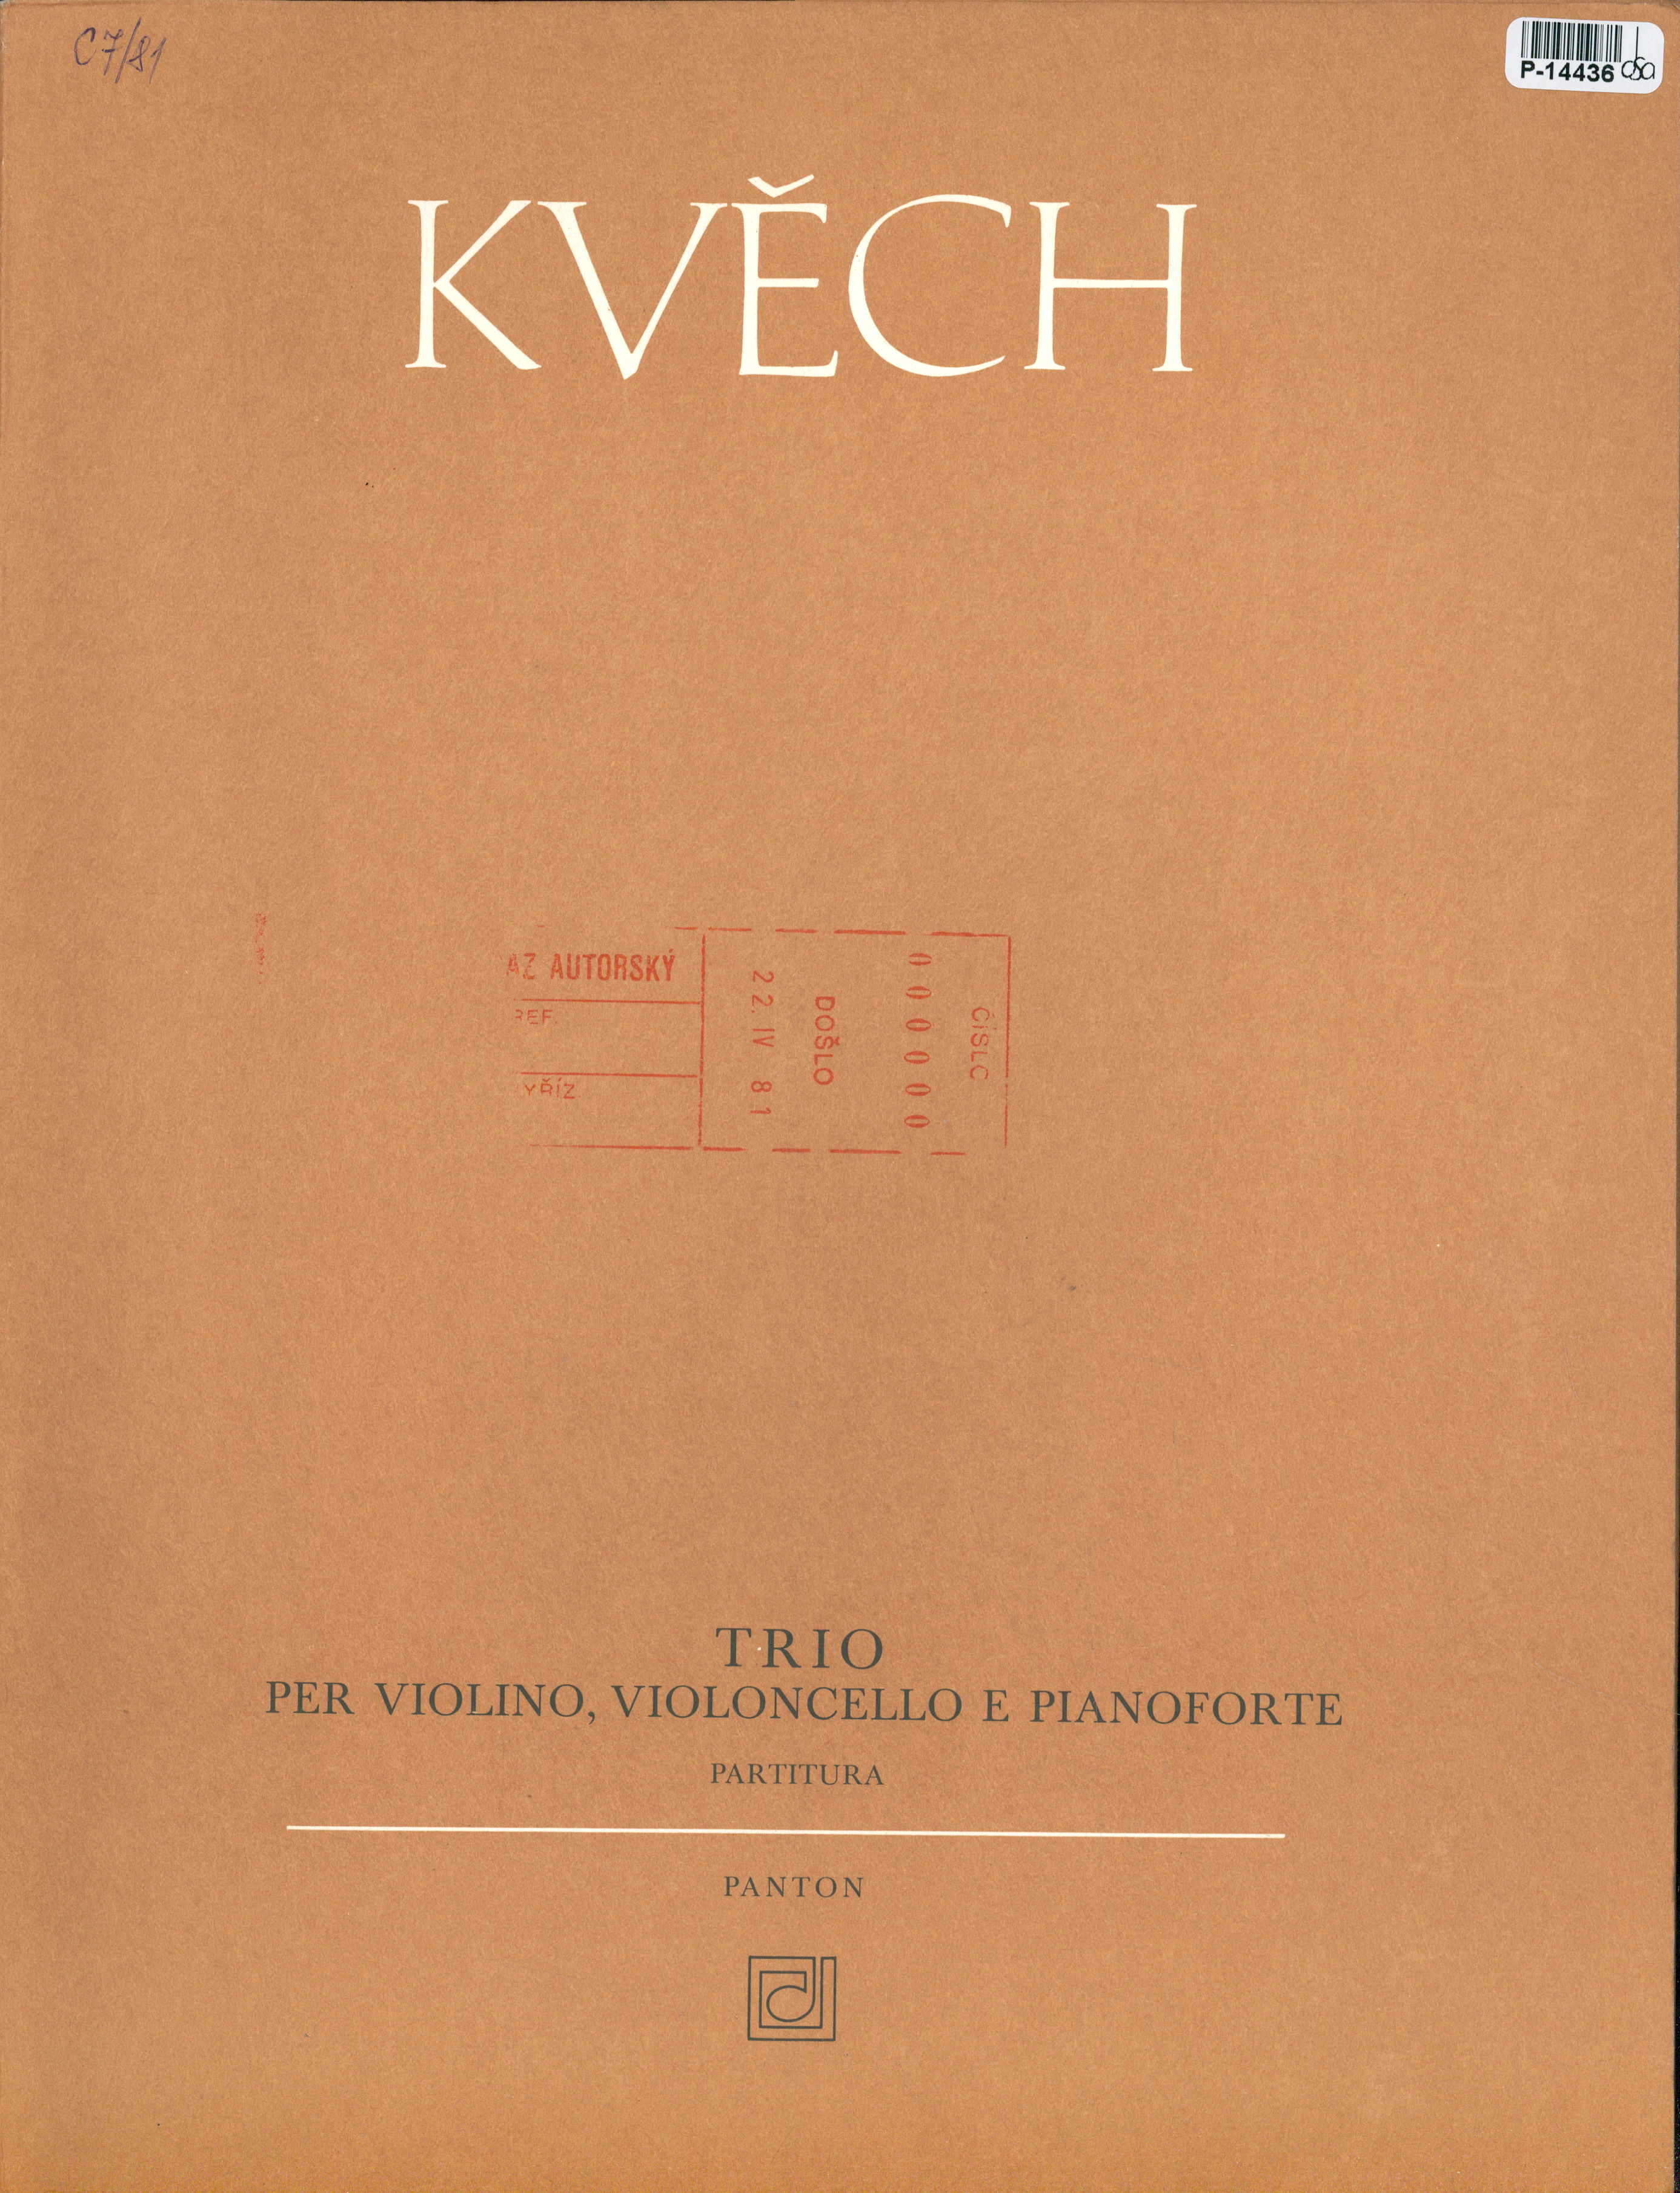 Trio - per violino, violoncello e pianoforte